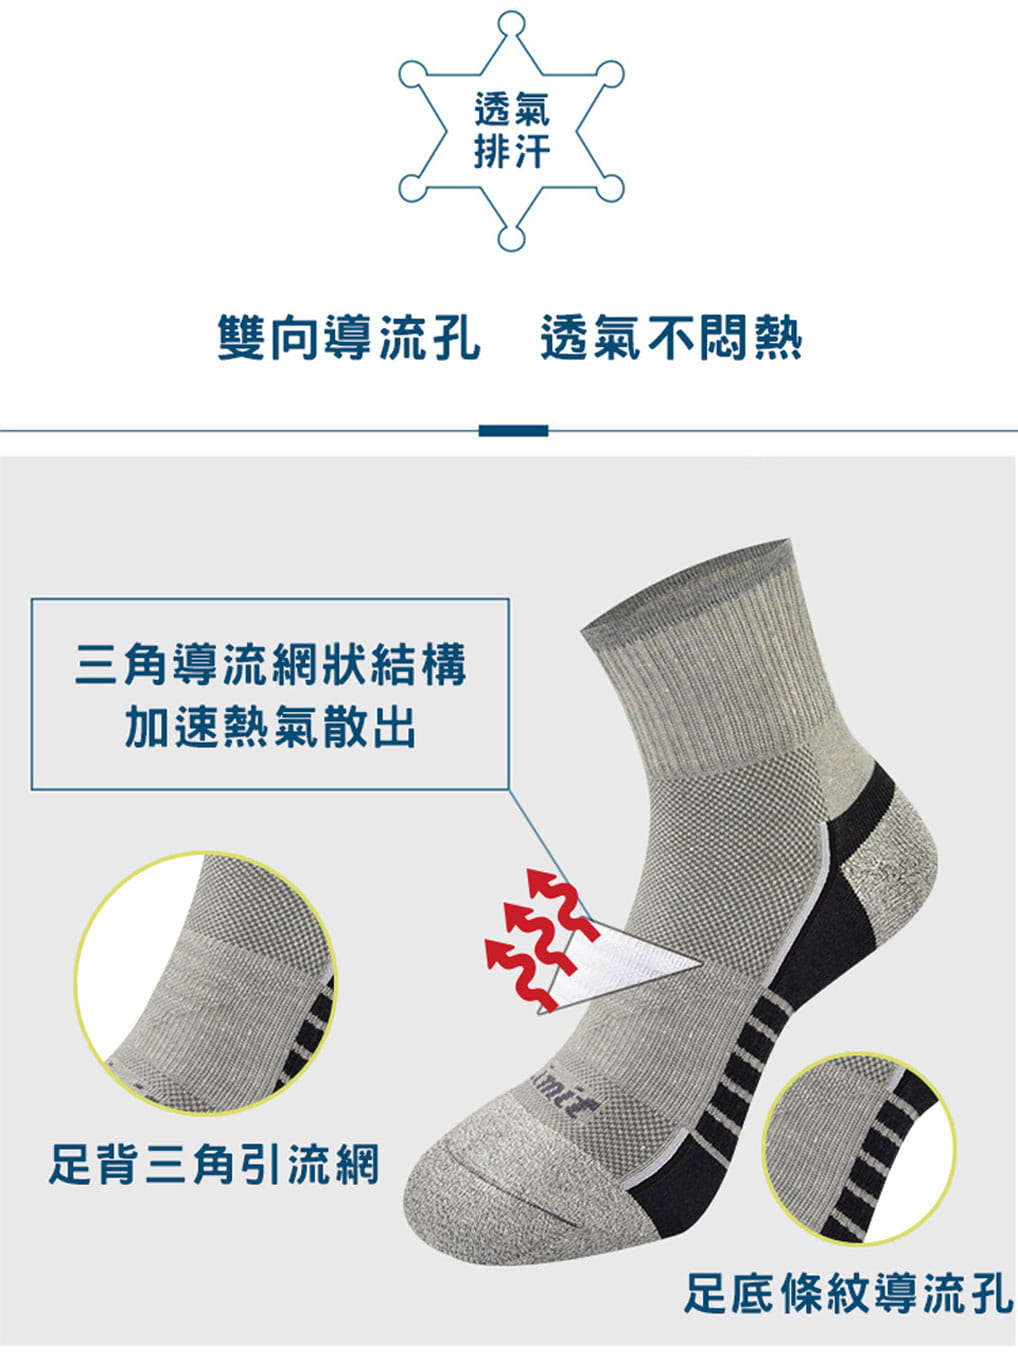 【力美特機能襪】條紋導流運動襪《4雙入》 5